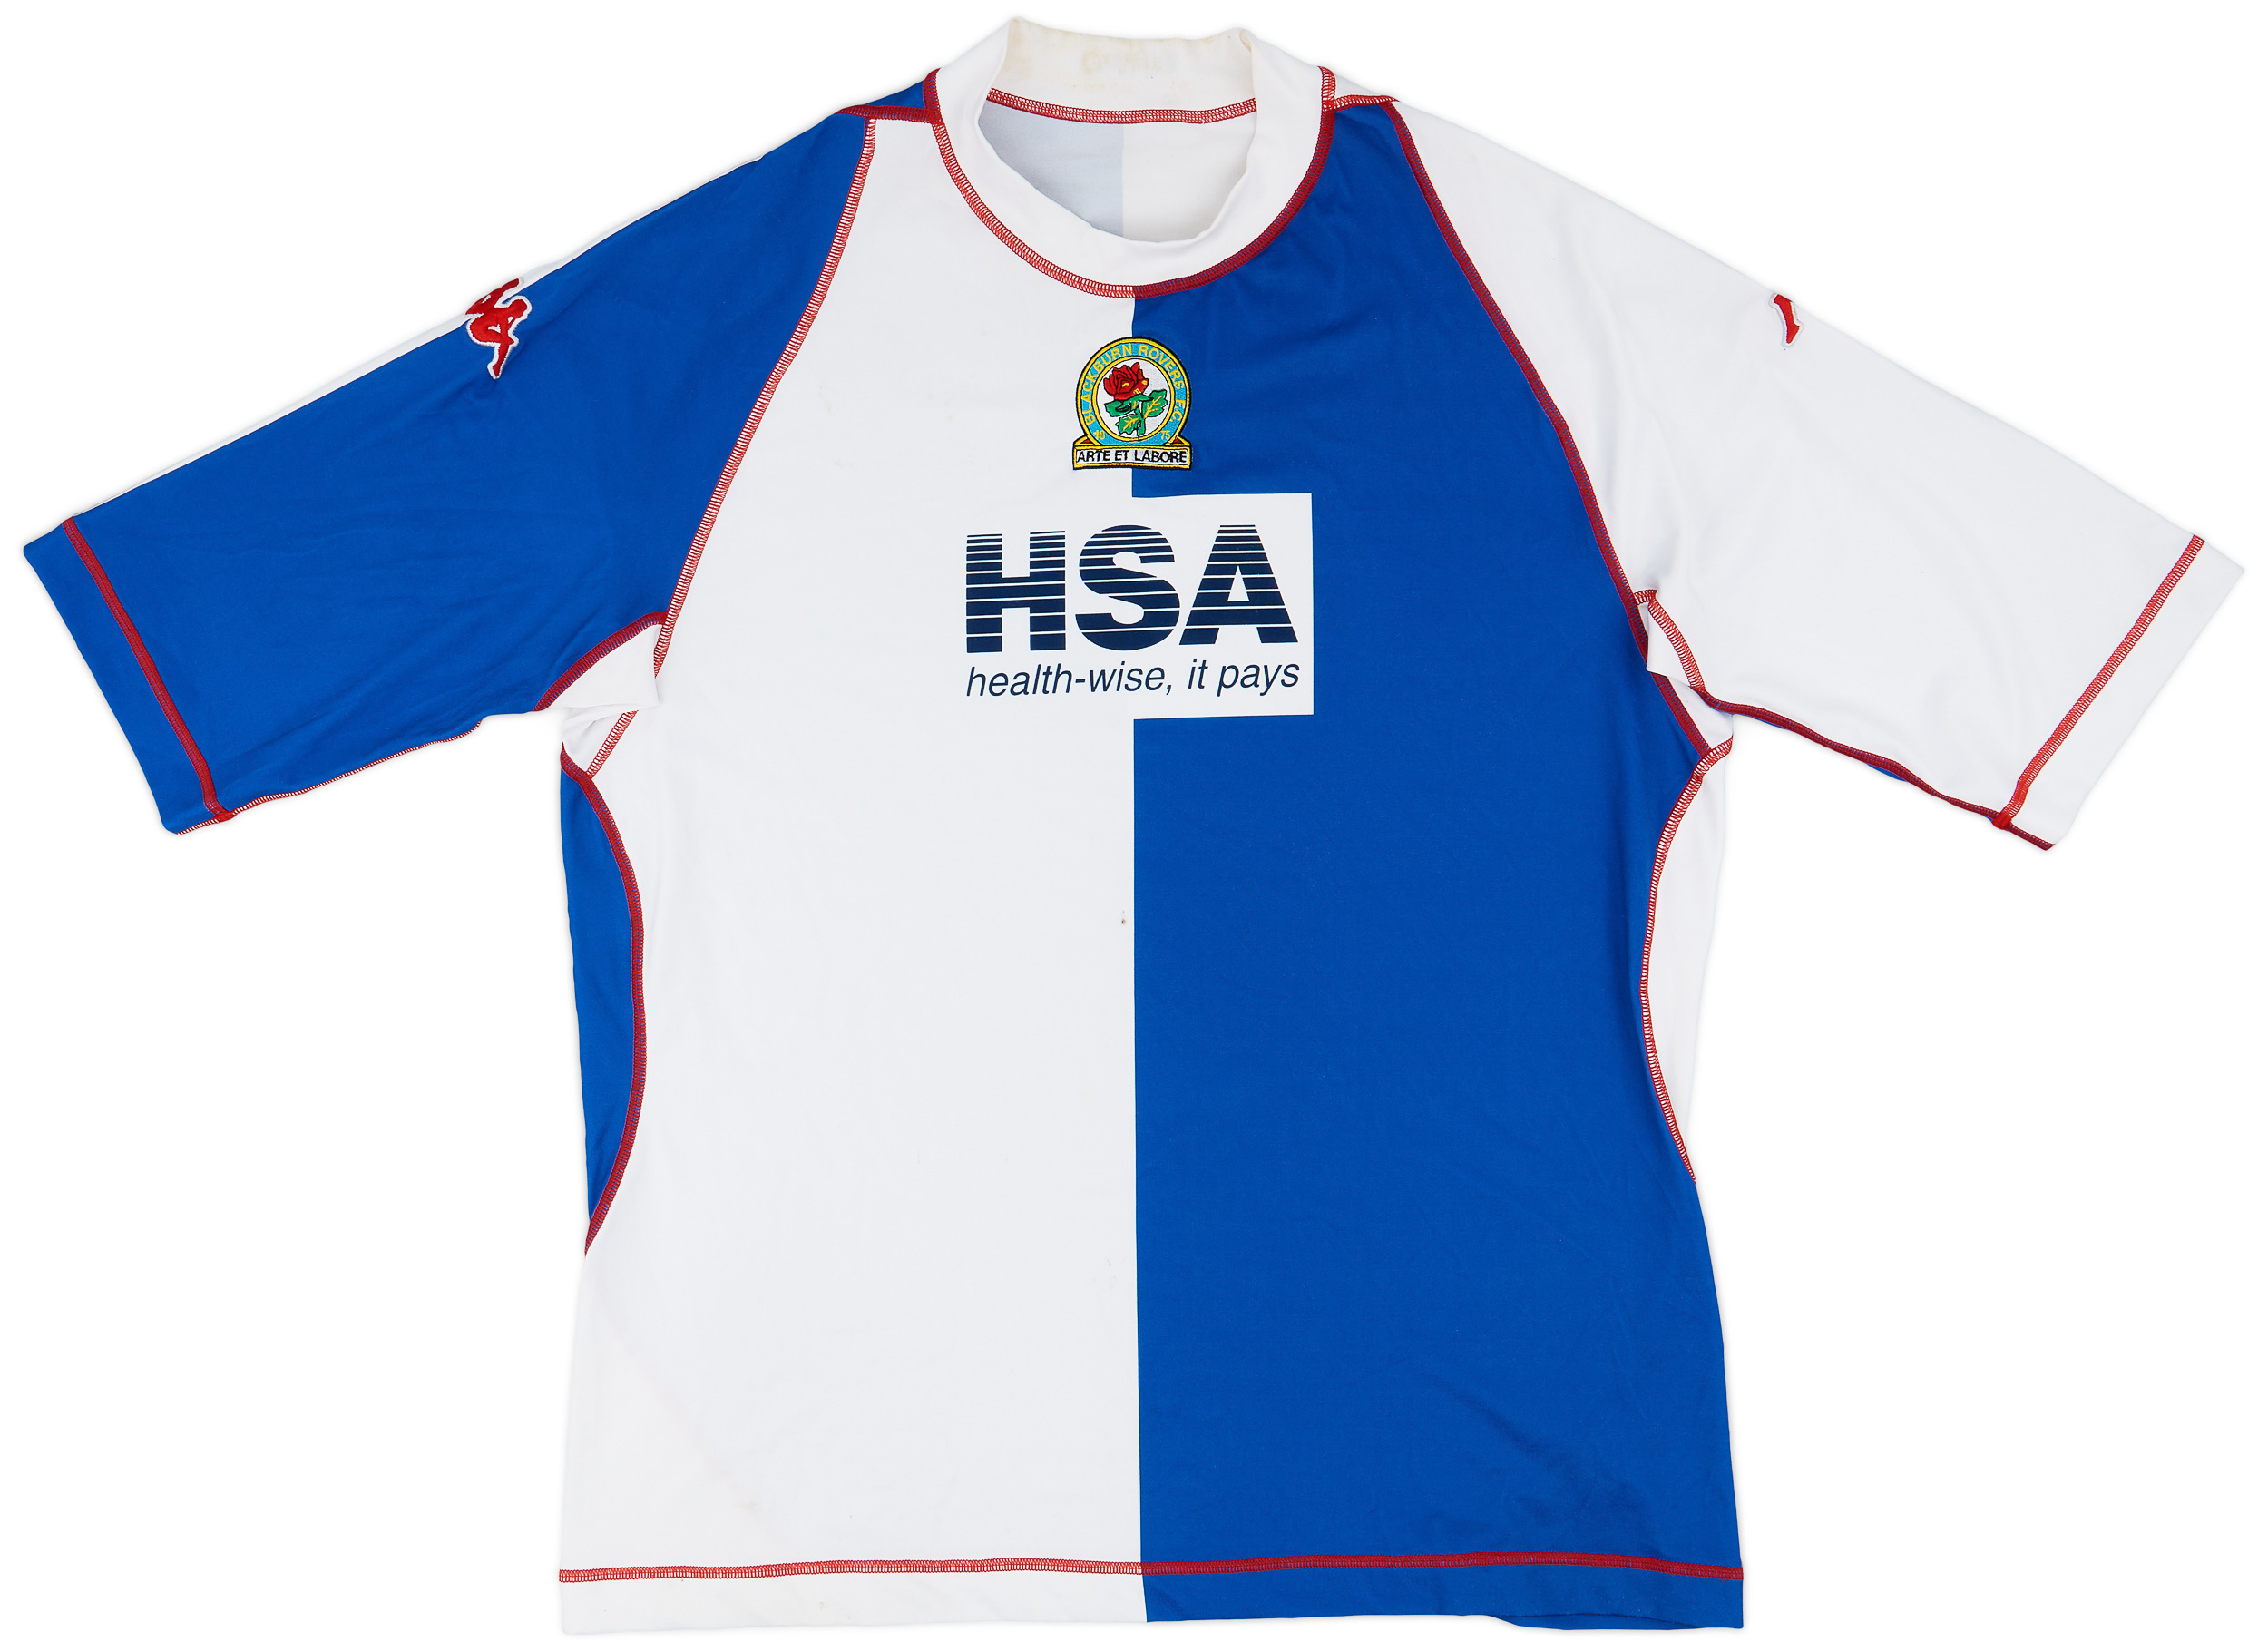 2003-04 Blackburn Rovers European Home Shirt - 6/10 - ()